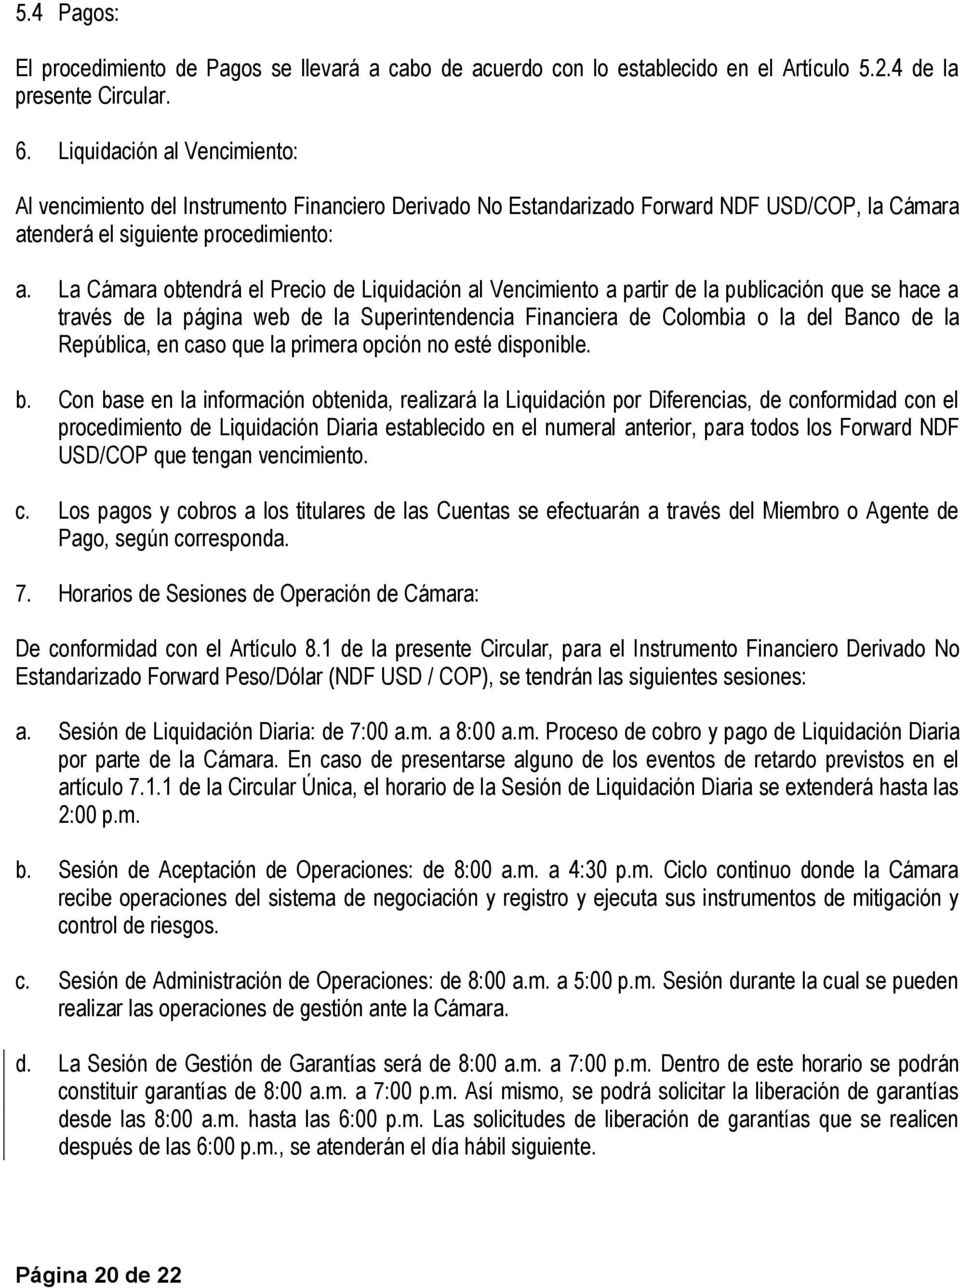 La Cámara obtendrá el Precio de Liquidación al Vencimiento a partir de la publicación que se hace a través de la página web de la Superintendencia Financiera de Colombia o la del Banco de la